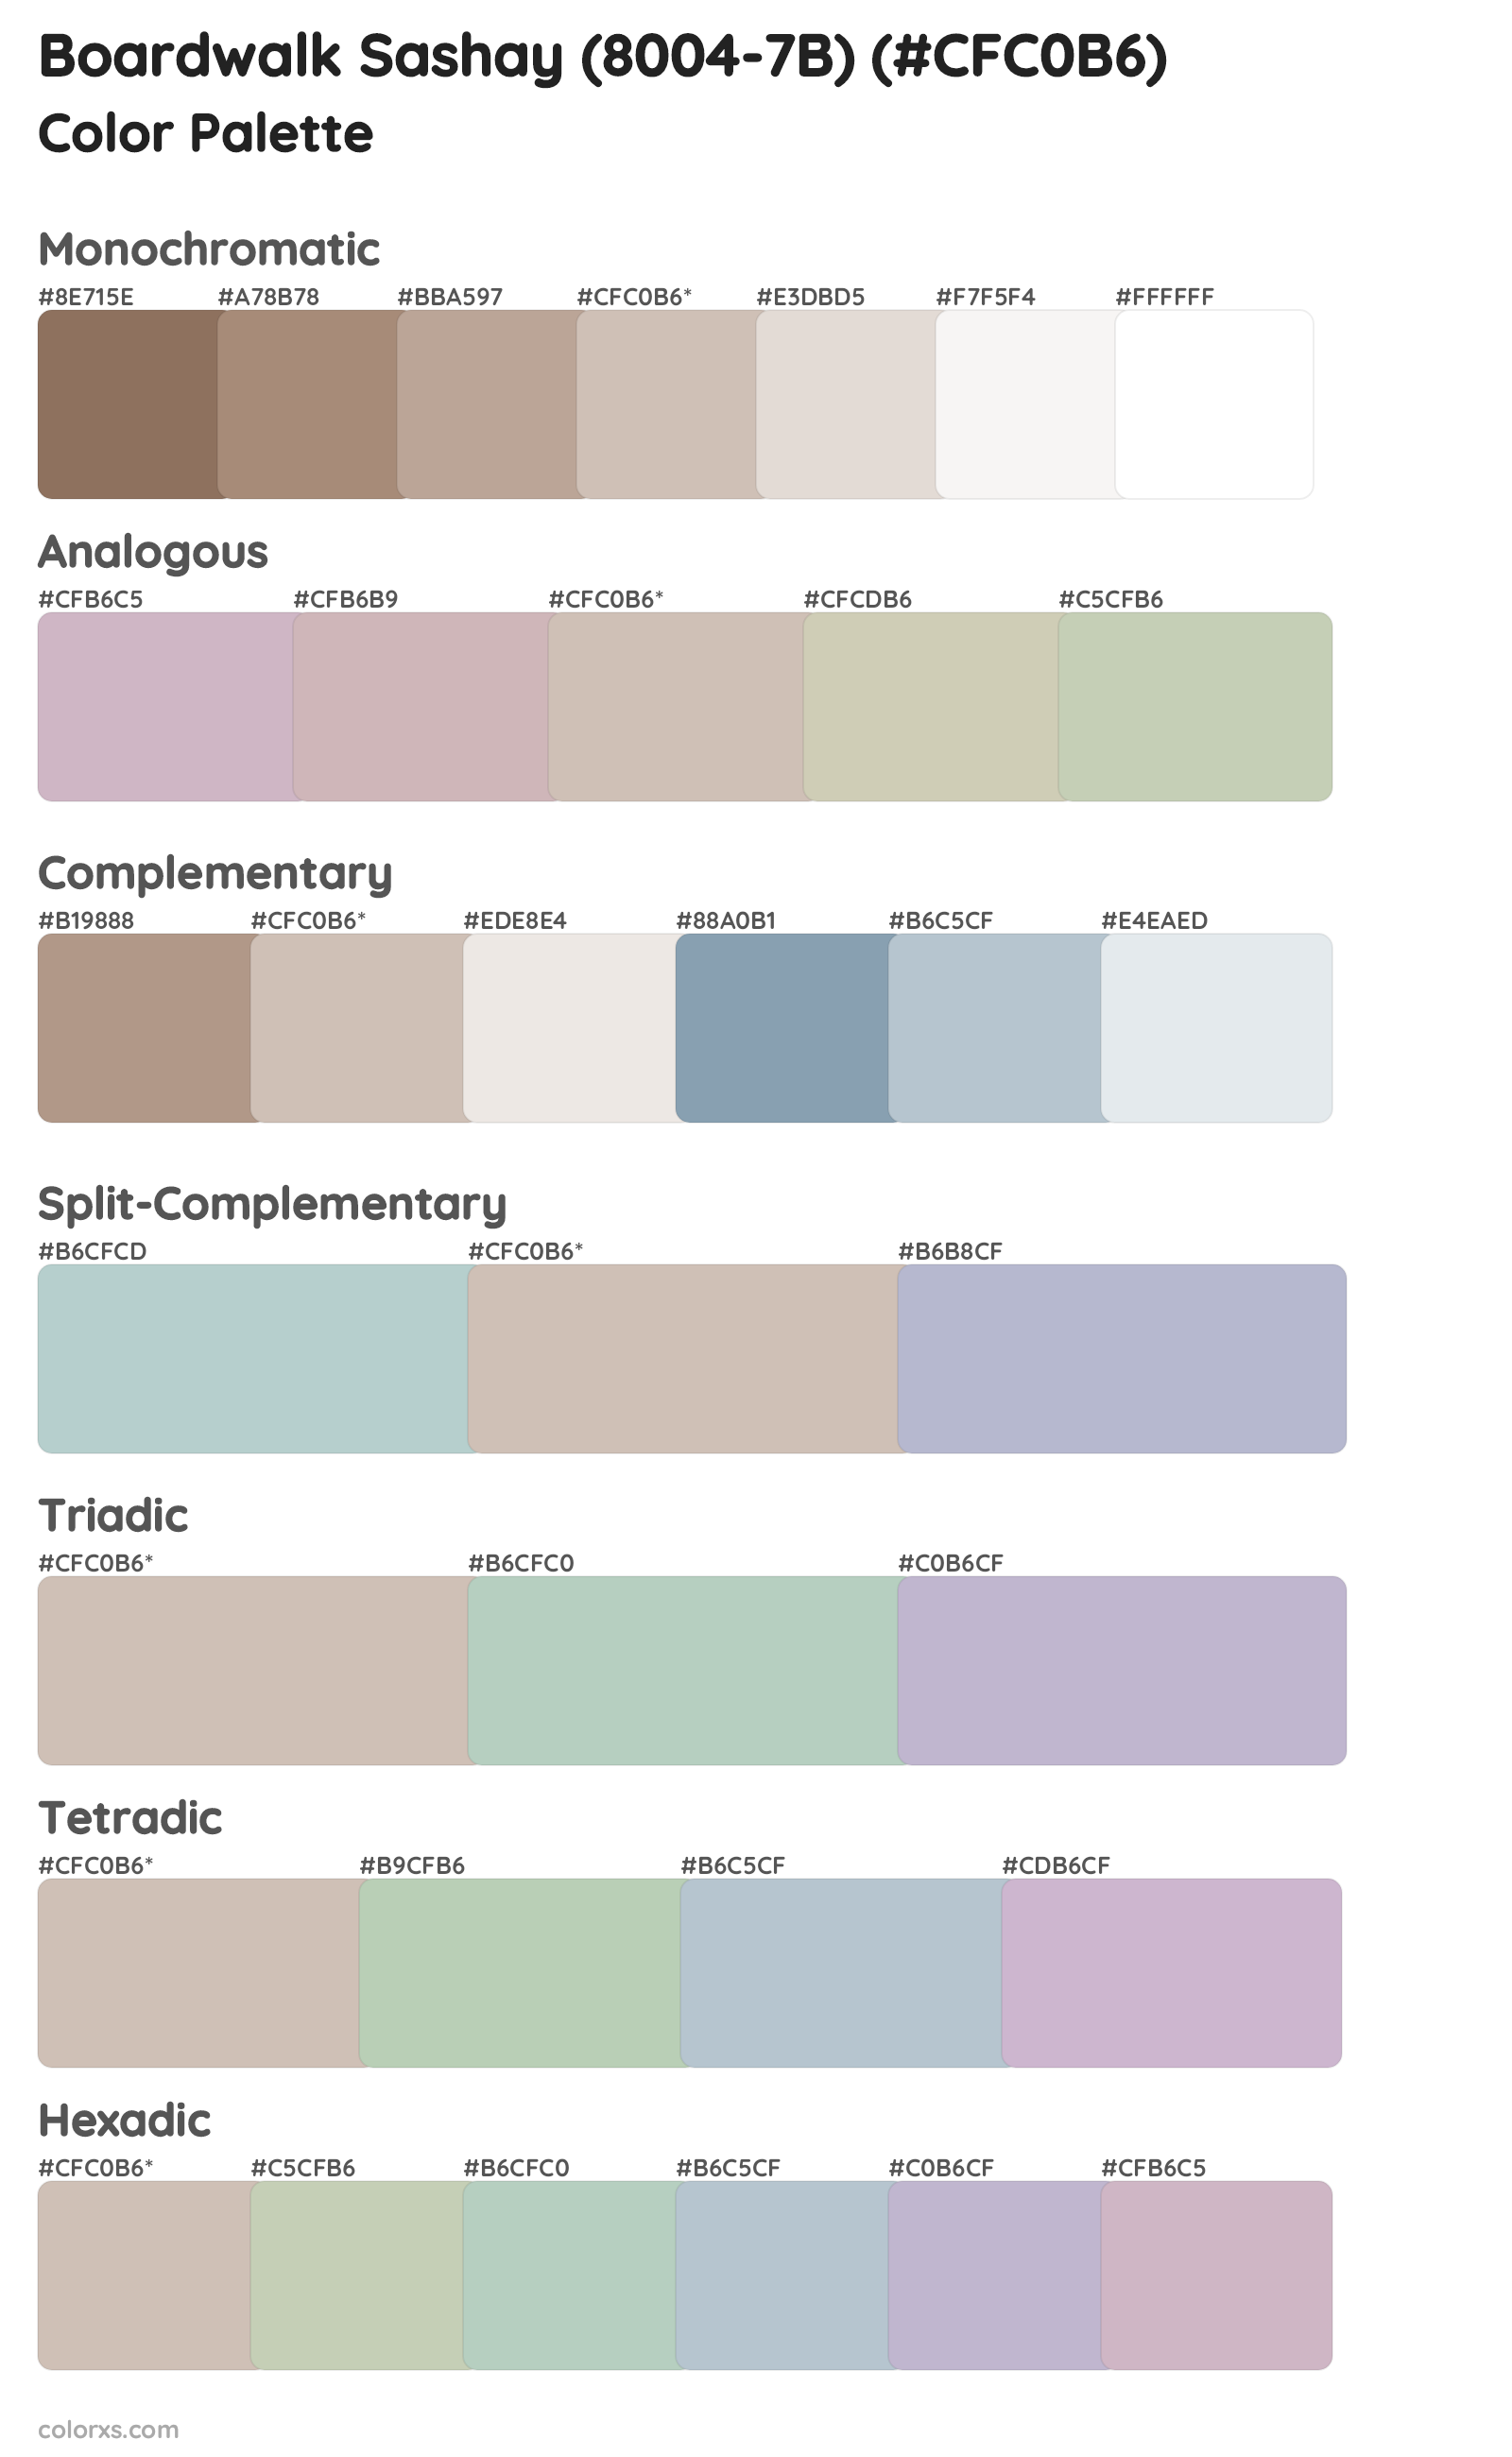 Boardwalk Sashay (8004-7B) Color Scheme Palettes